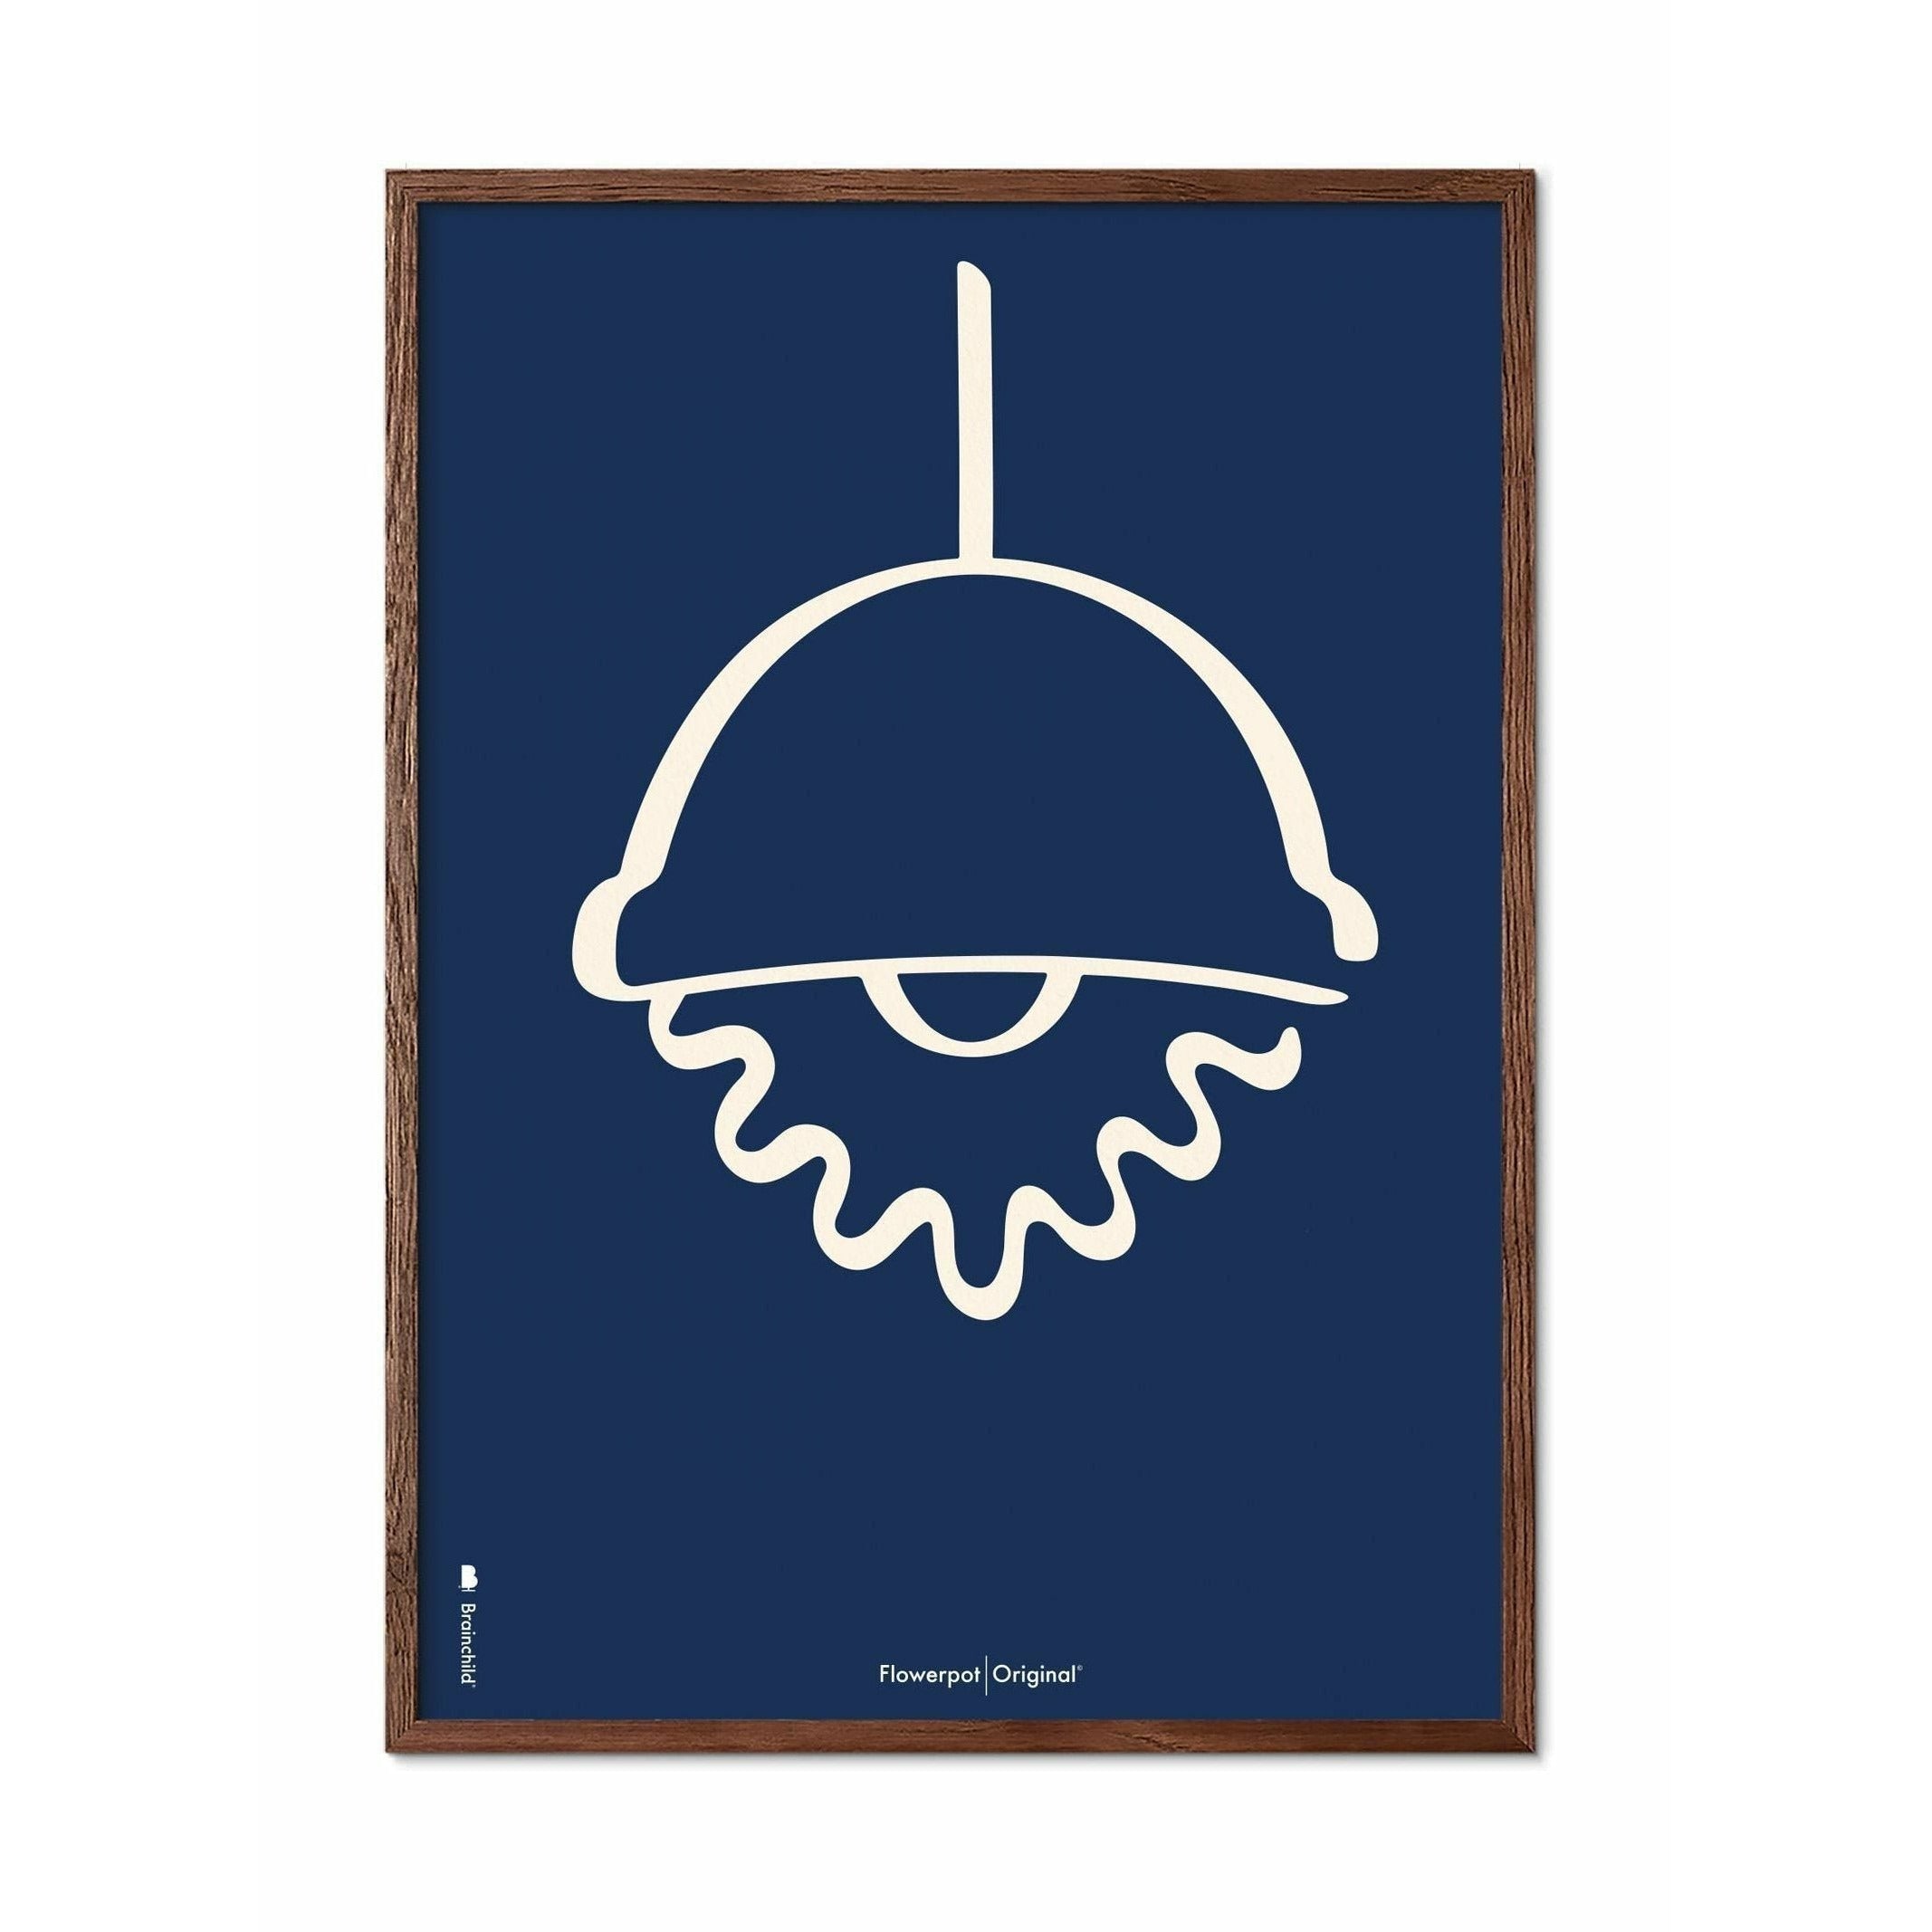 Brainchild Flowerpot Line Poster, Frame Made Of Dark Wood 30x40 Cm, Blue Background